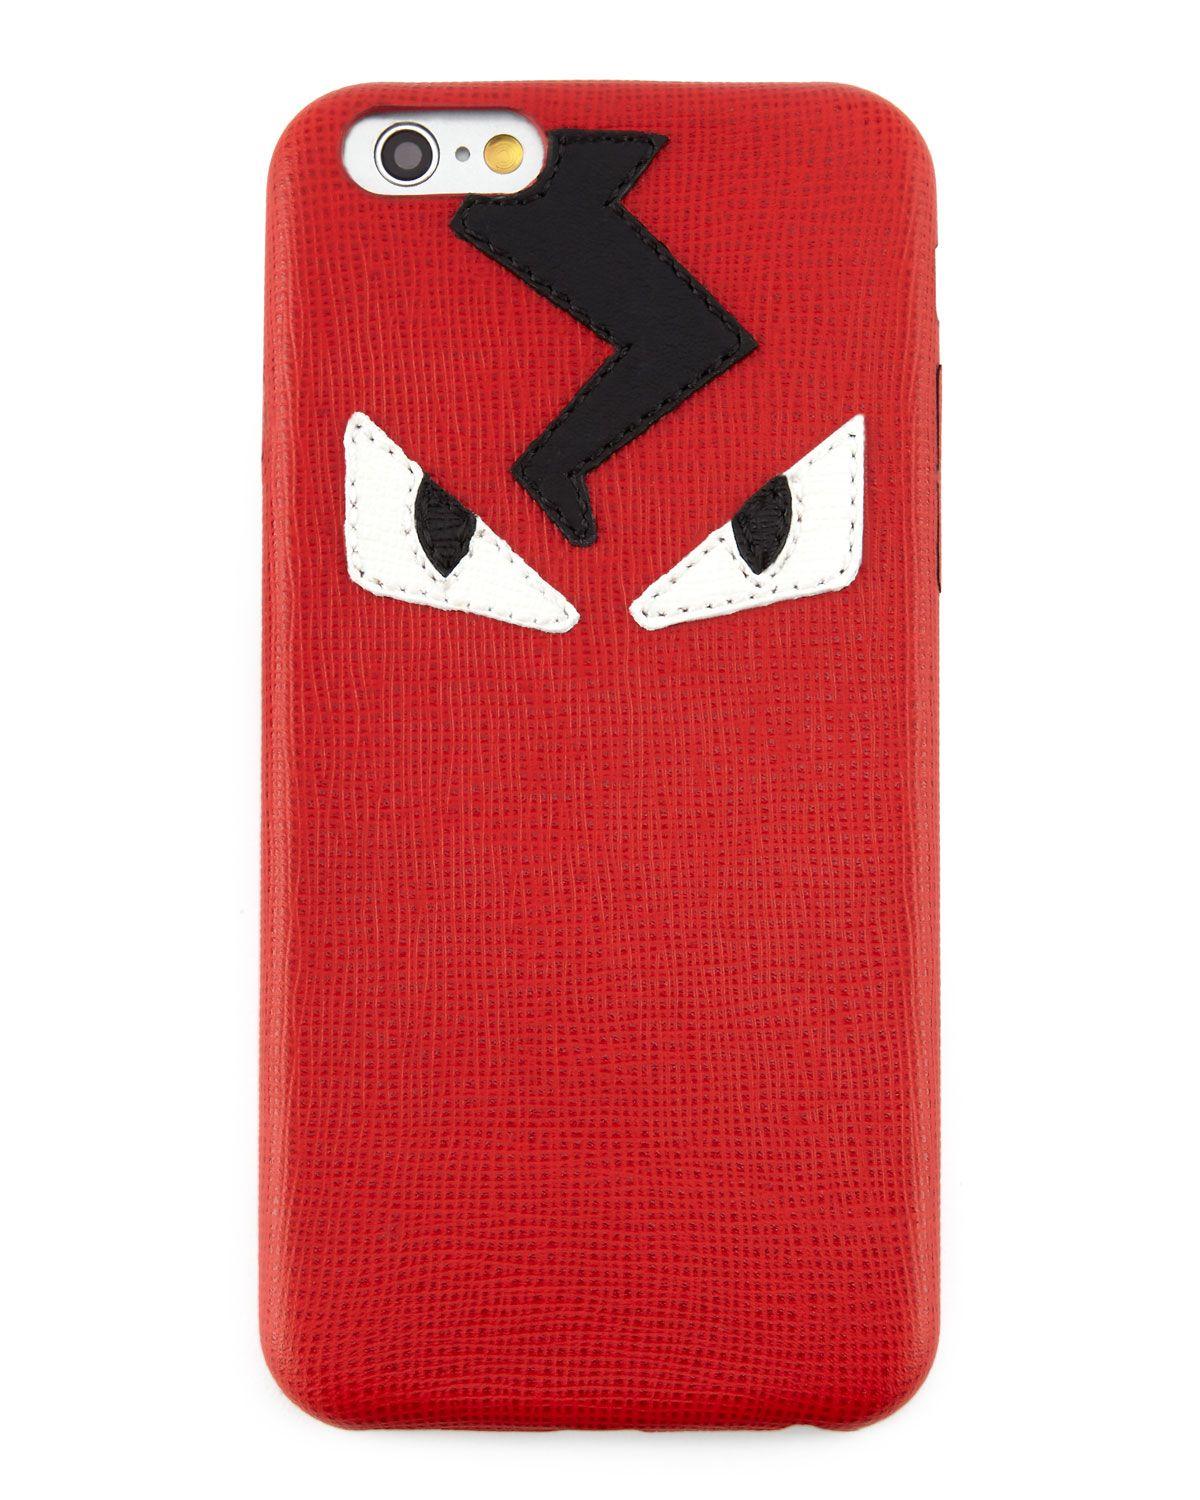 Fendi Monster Eyes Logo - Fendi Monster Eyes iPhone 6 Cover, Red | Neiman Marcus